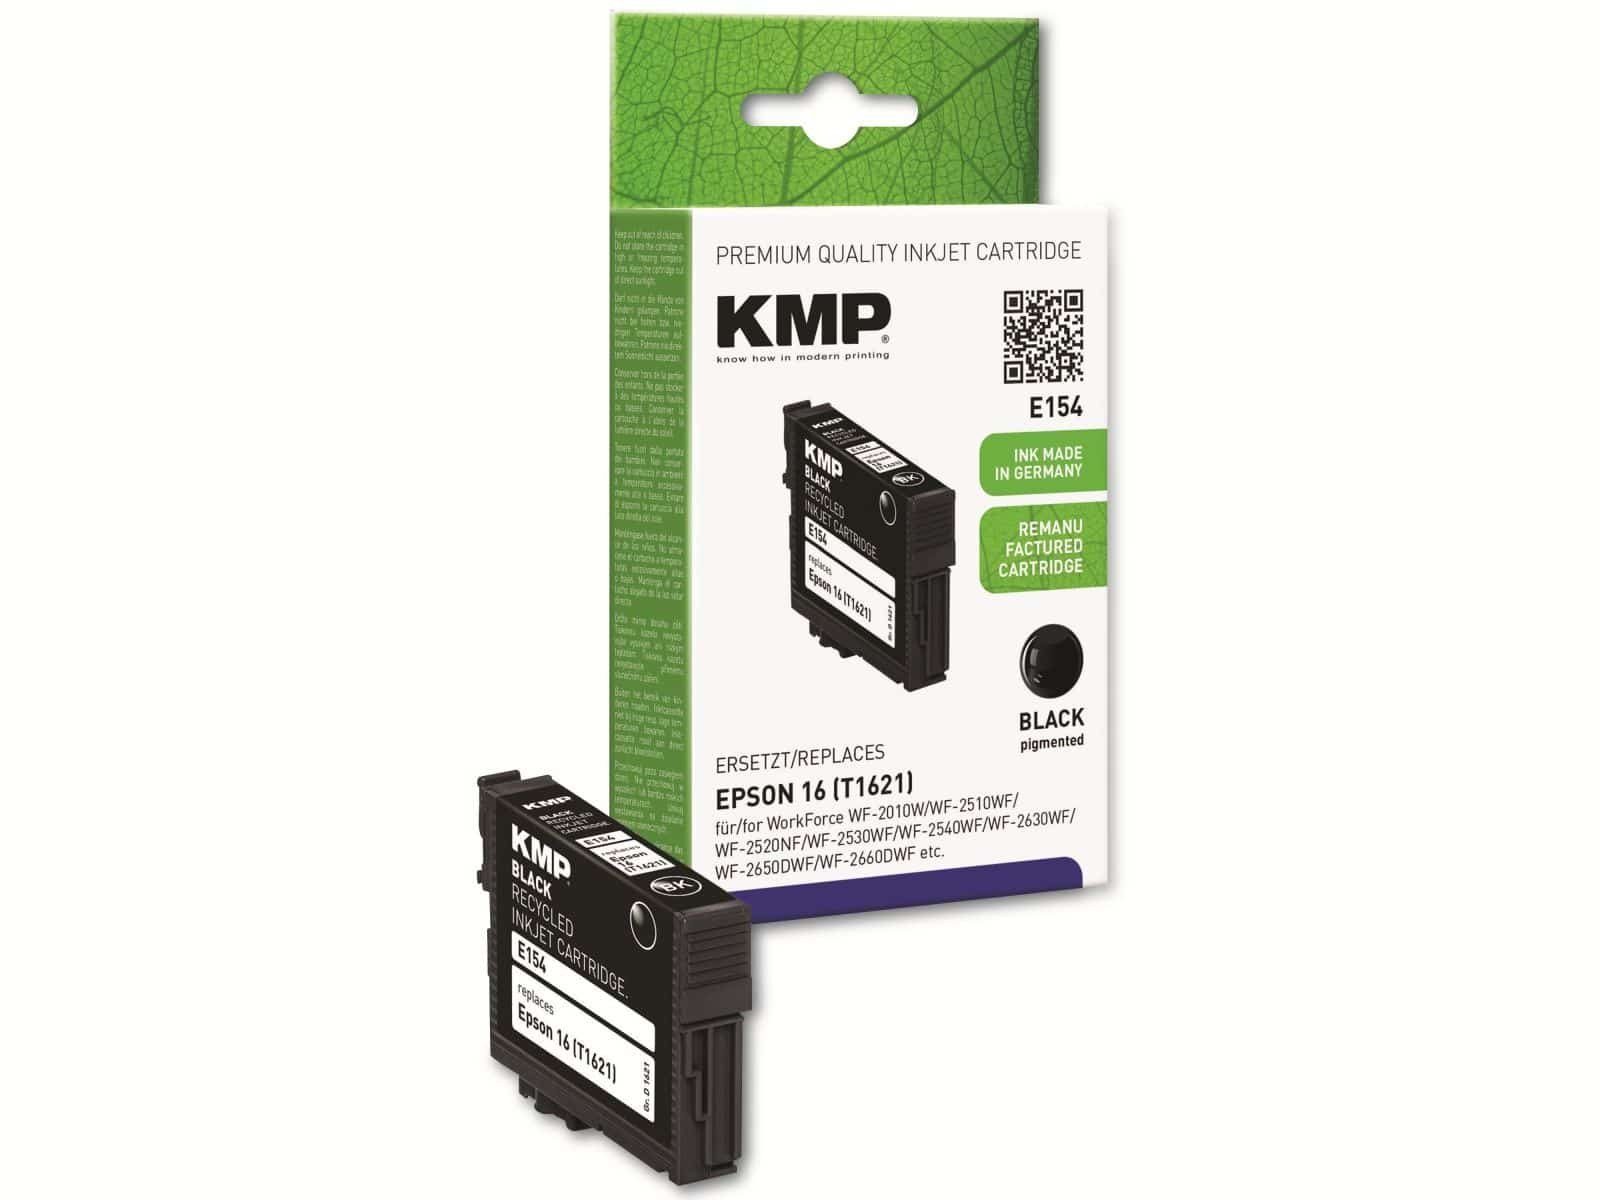 KMP KMP Tintenpatrone kompatibel für Epson 16 (T1621) Tintenpatrone